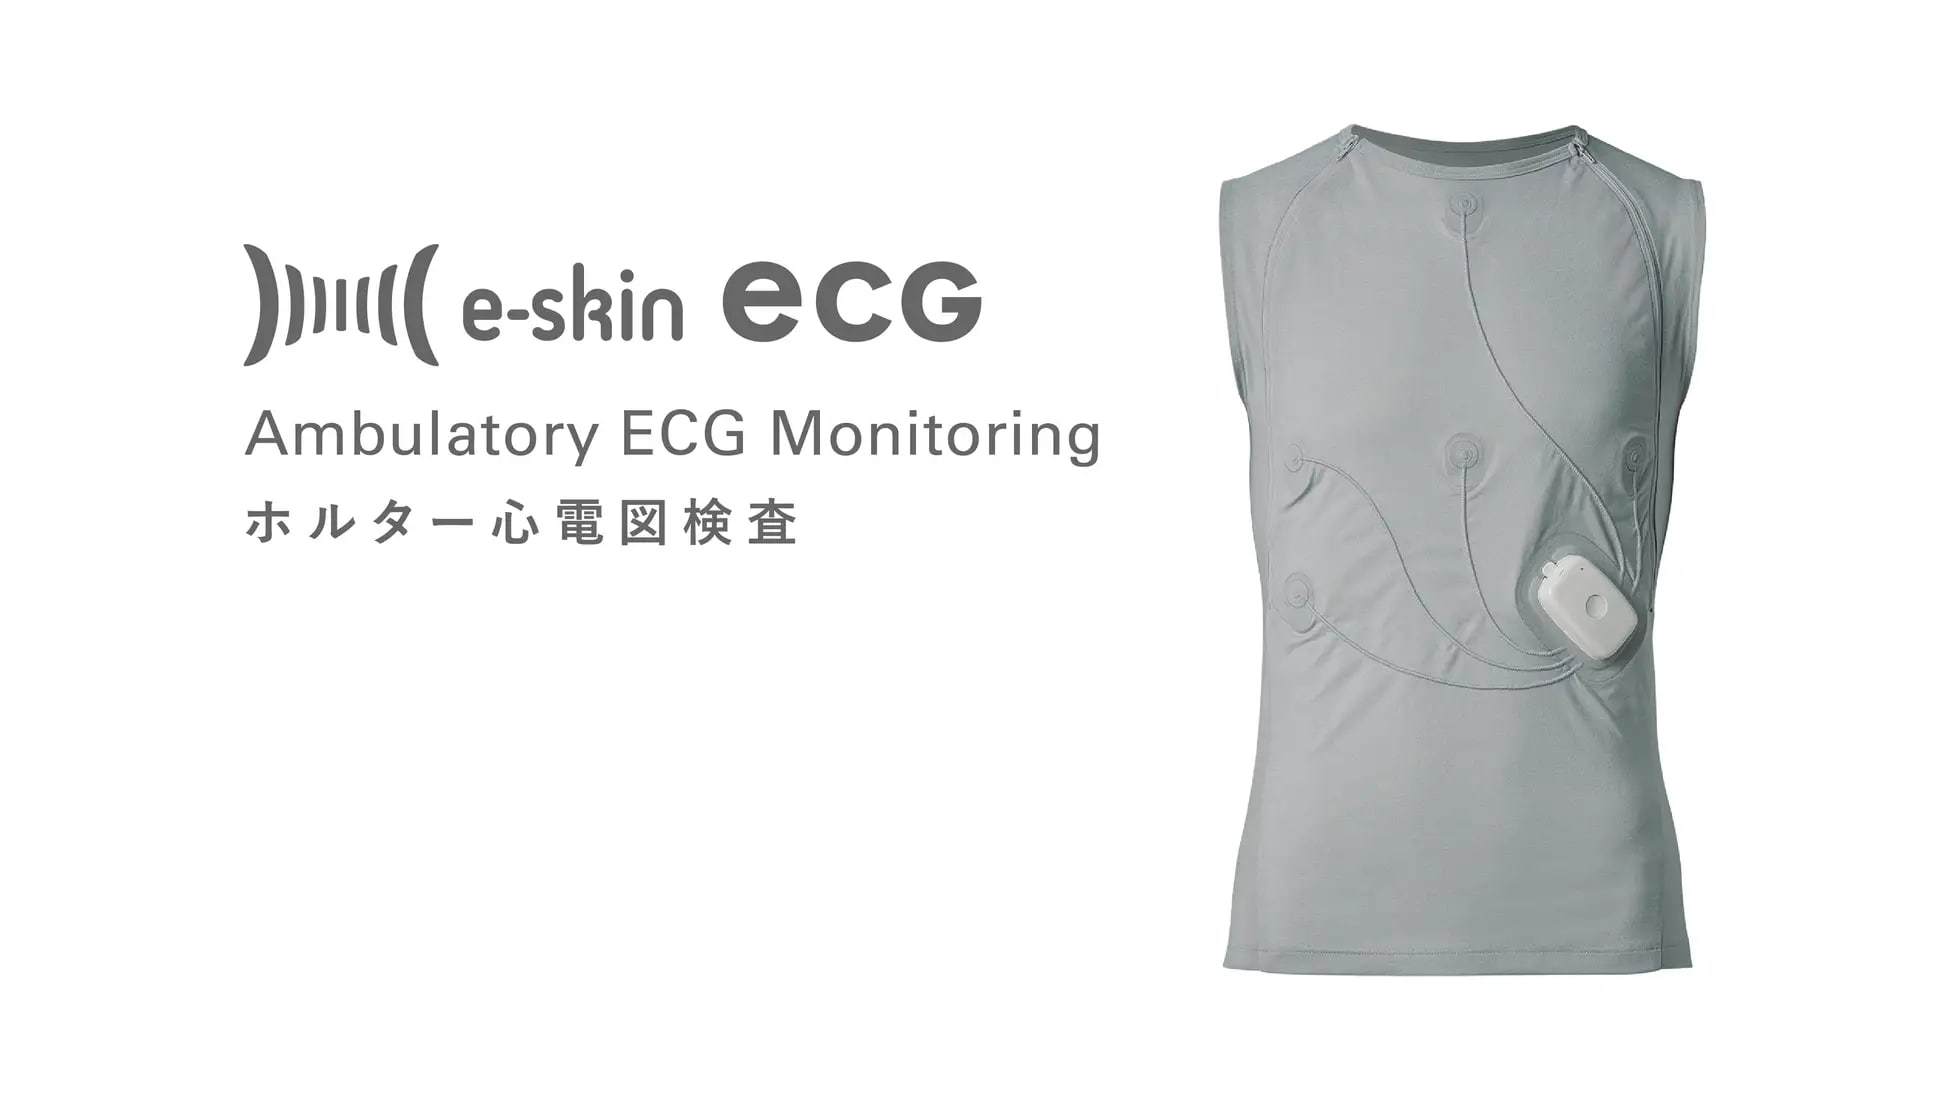 慶應義塾大学病院にホルター心電図の郵送検査サービス「e-skin ECG」が導入─人間ドックでホルター心電図検査可能に